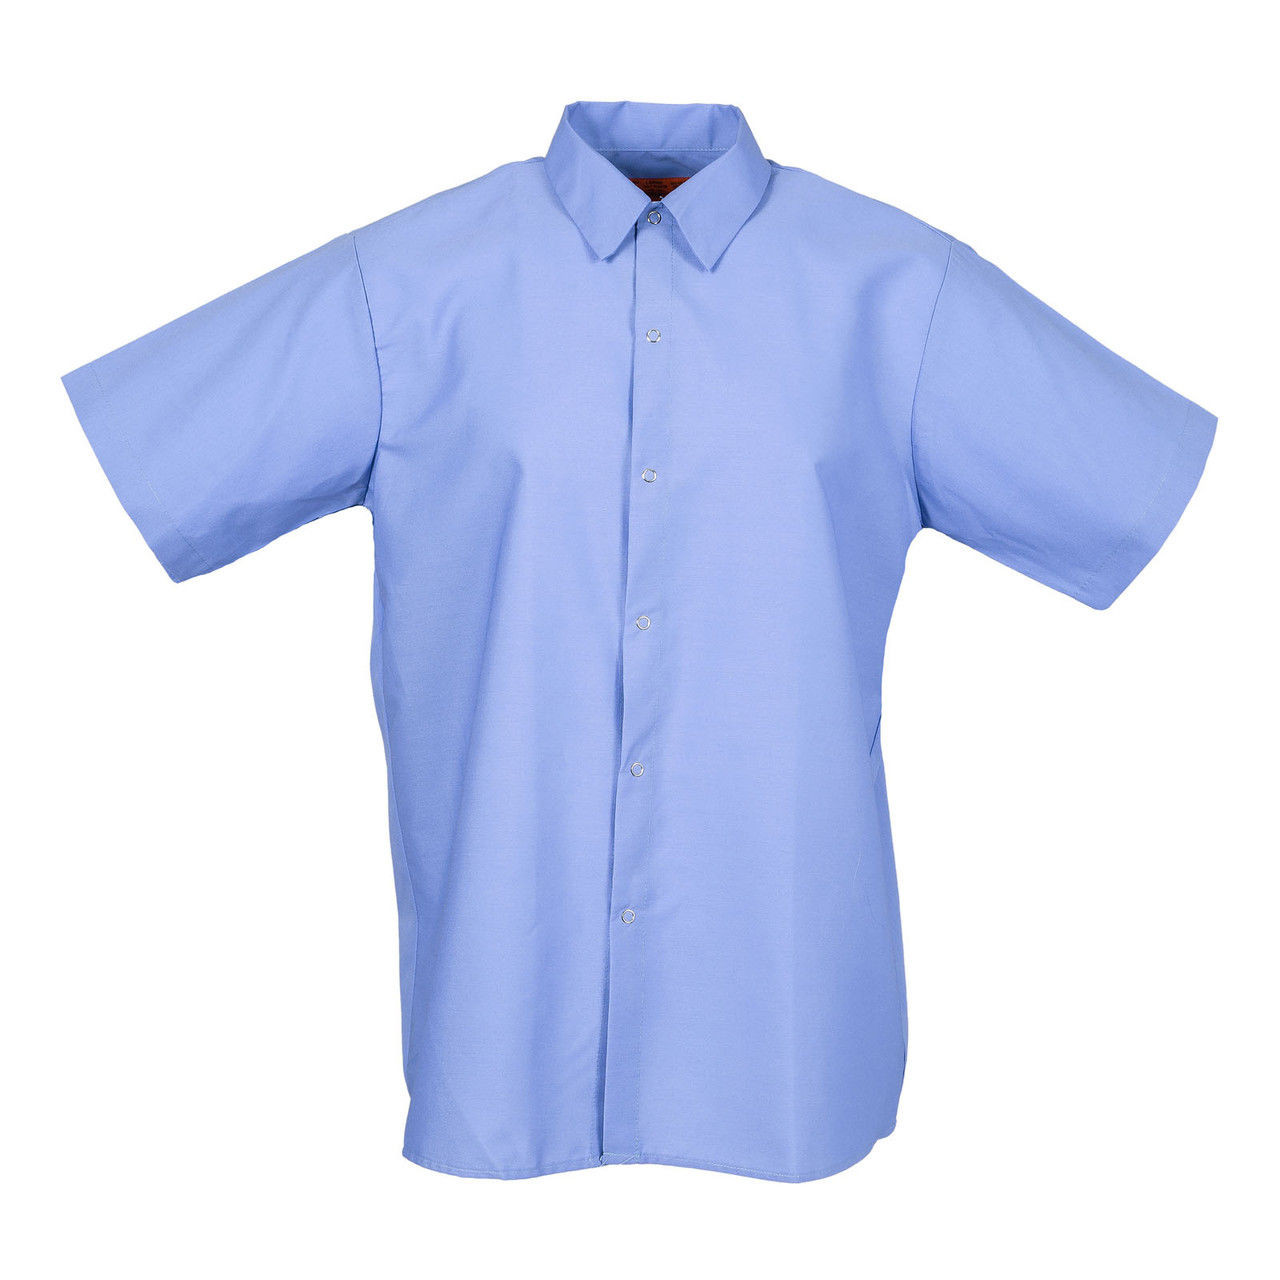 Men's Short Sleeve Gripper Front Postman Blue Industrial Work Shirt